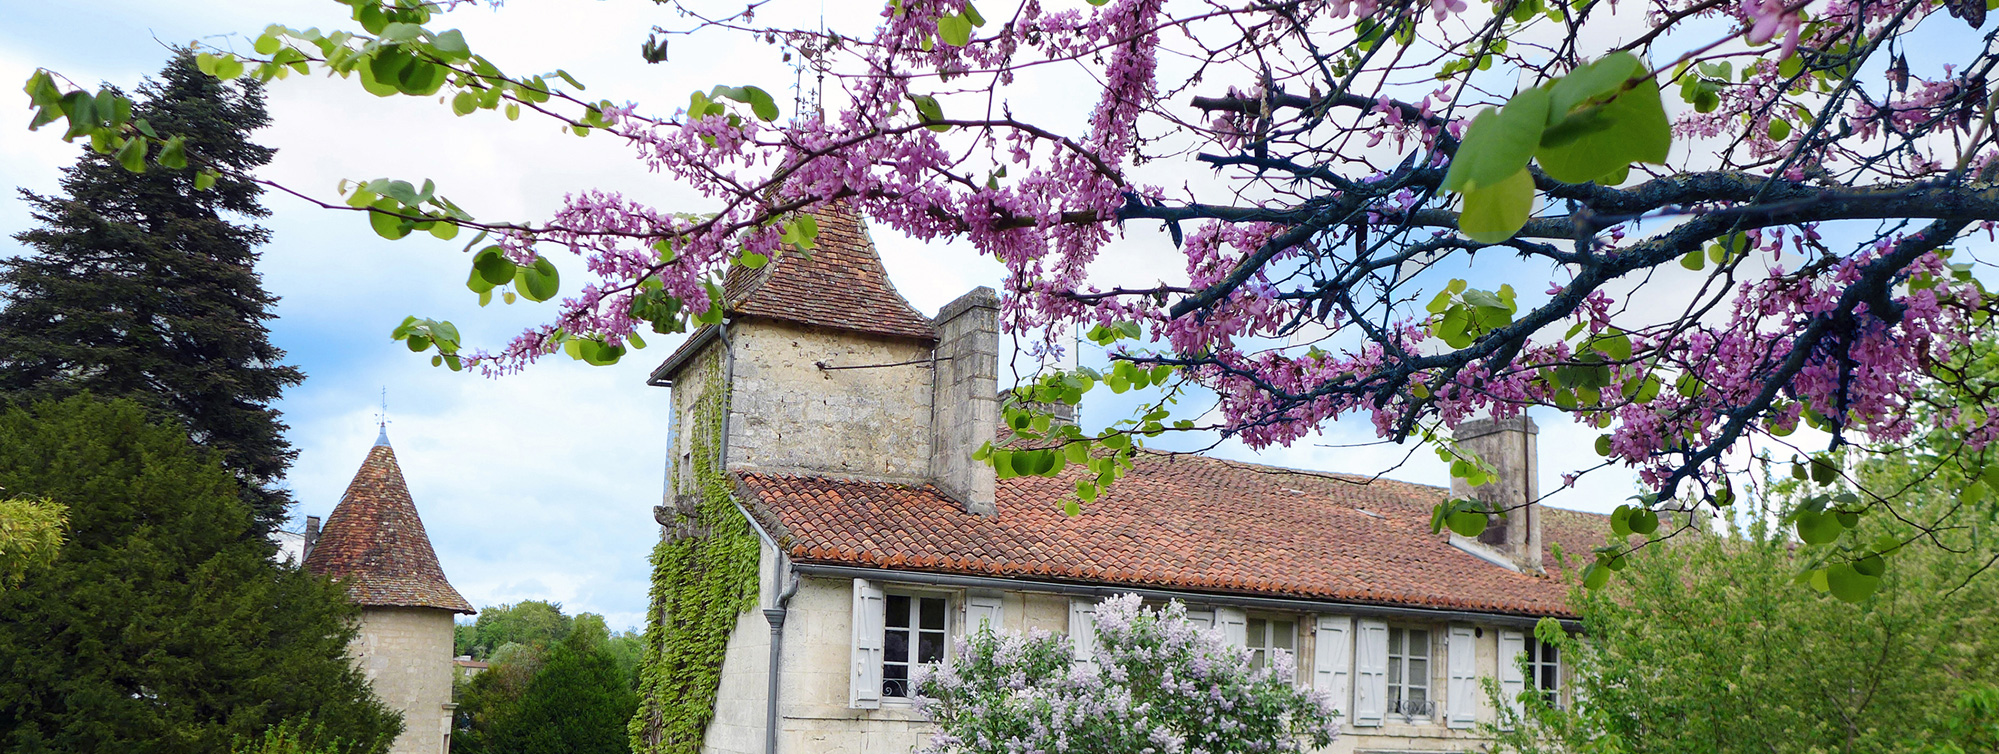 Château de Maumont - Chambres d'hôtes de charme à Magnac sur Touvre, Charente ©Chateau de Maumont